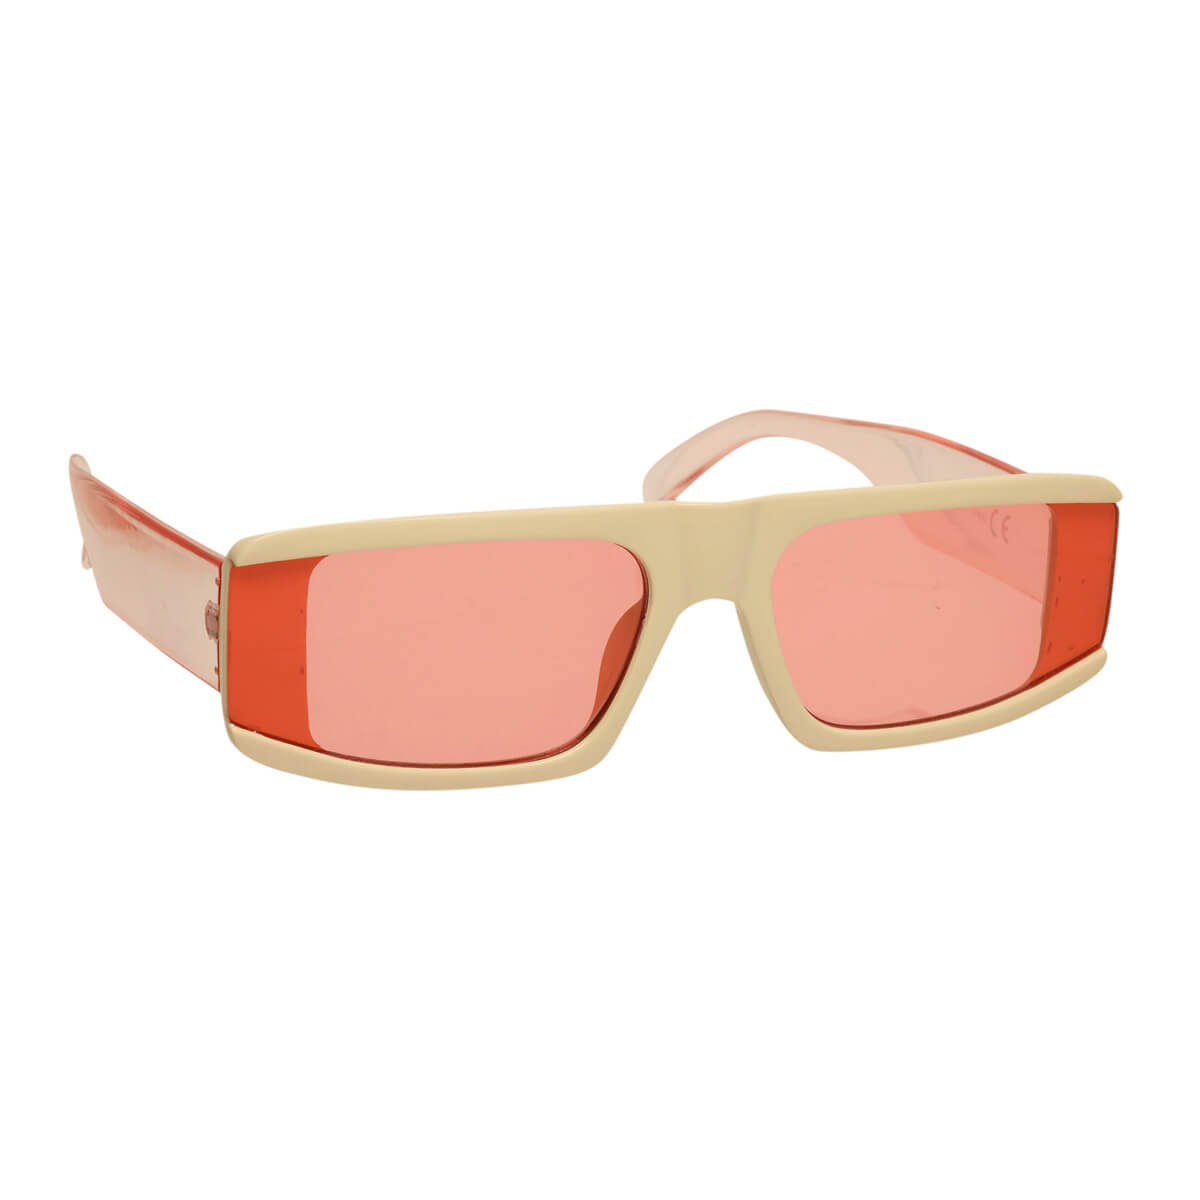 Futuristic angled sunglasses